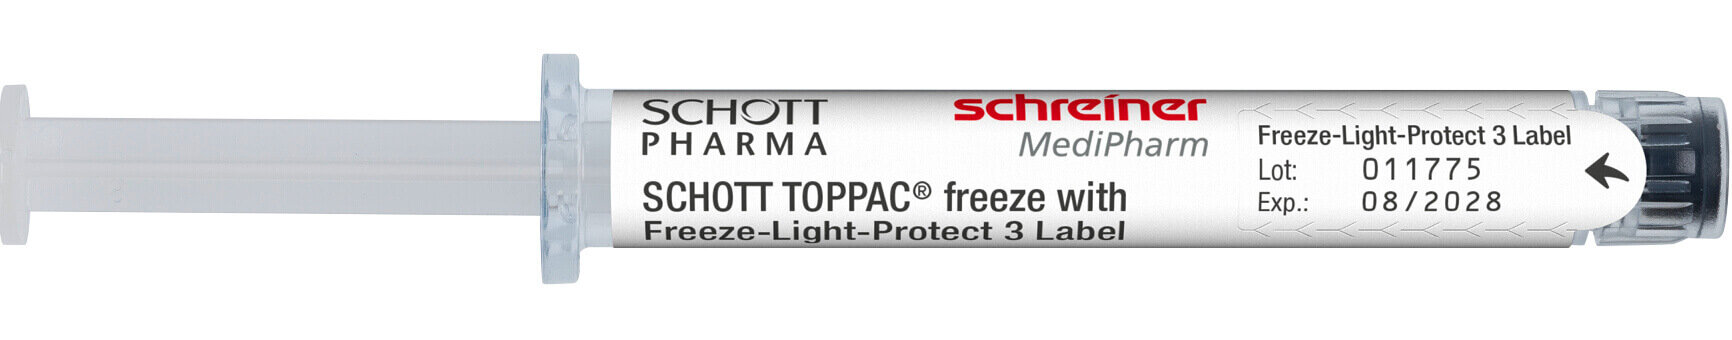 Freeze-Light-Protect 3 verfügt über einen vollständigen Lichtschutz.